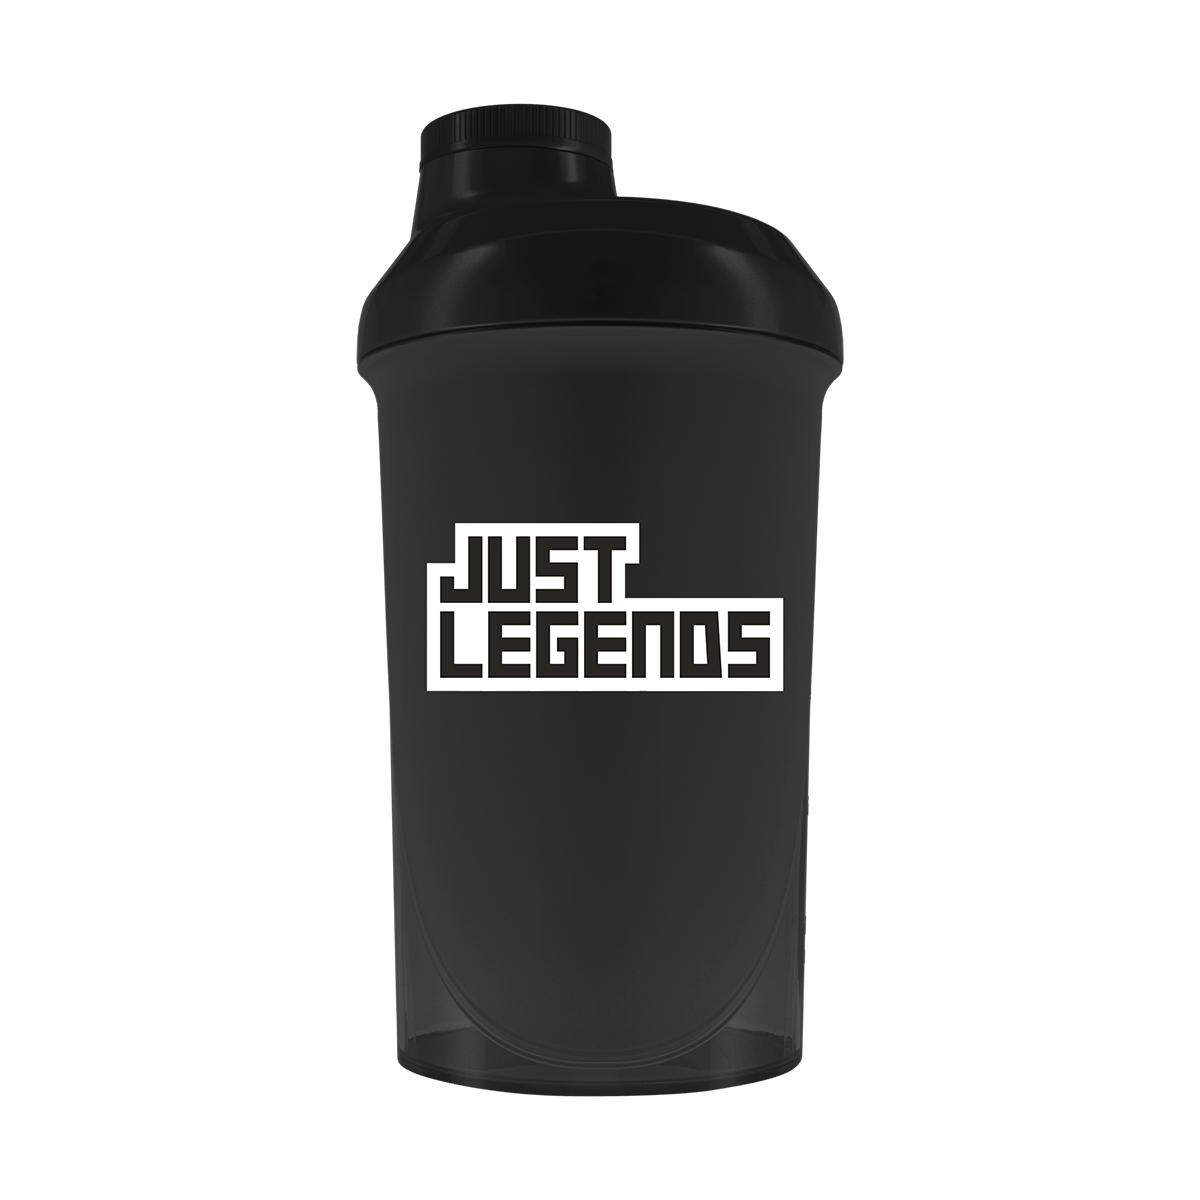 Just Legends Premium Shaker "Black" | Funktionaler, veganer Shaker auf Pulverbasis ohne Zucker, mit wenig Kalorien, vielen Vitaminen und natürlichen Aromen.